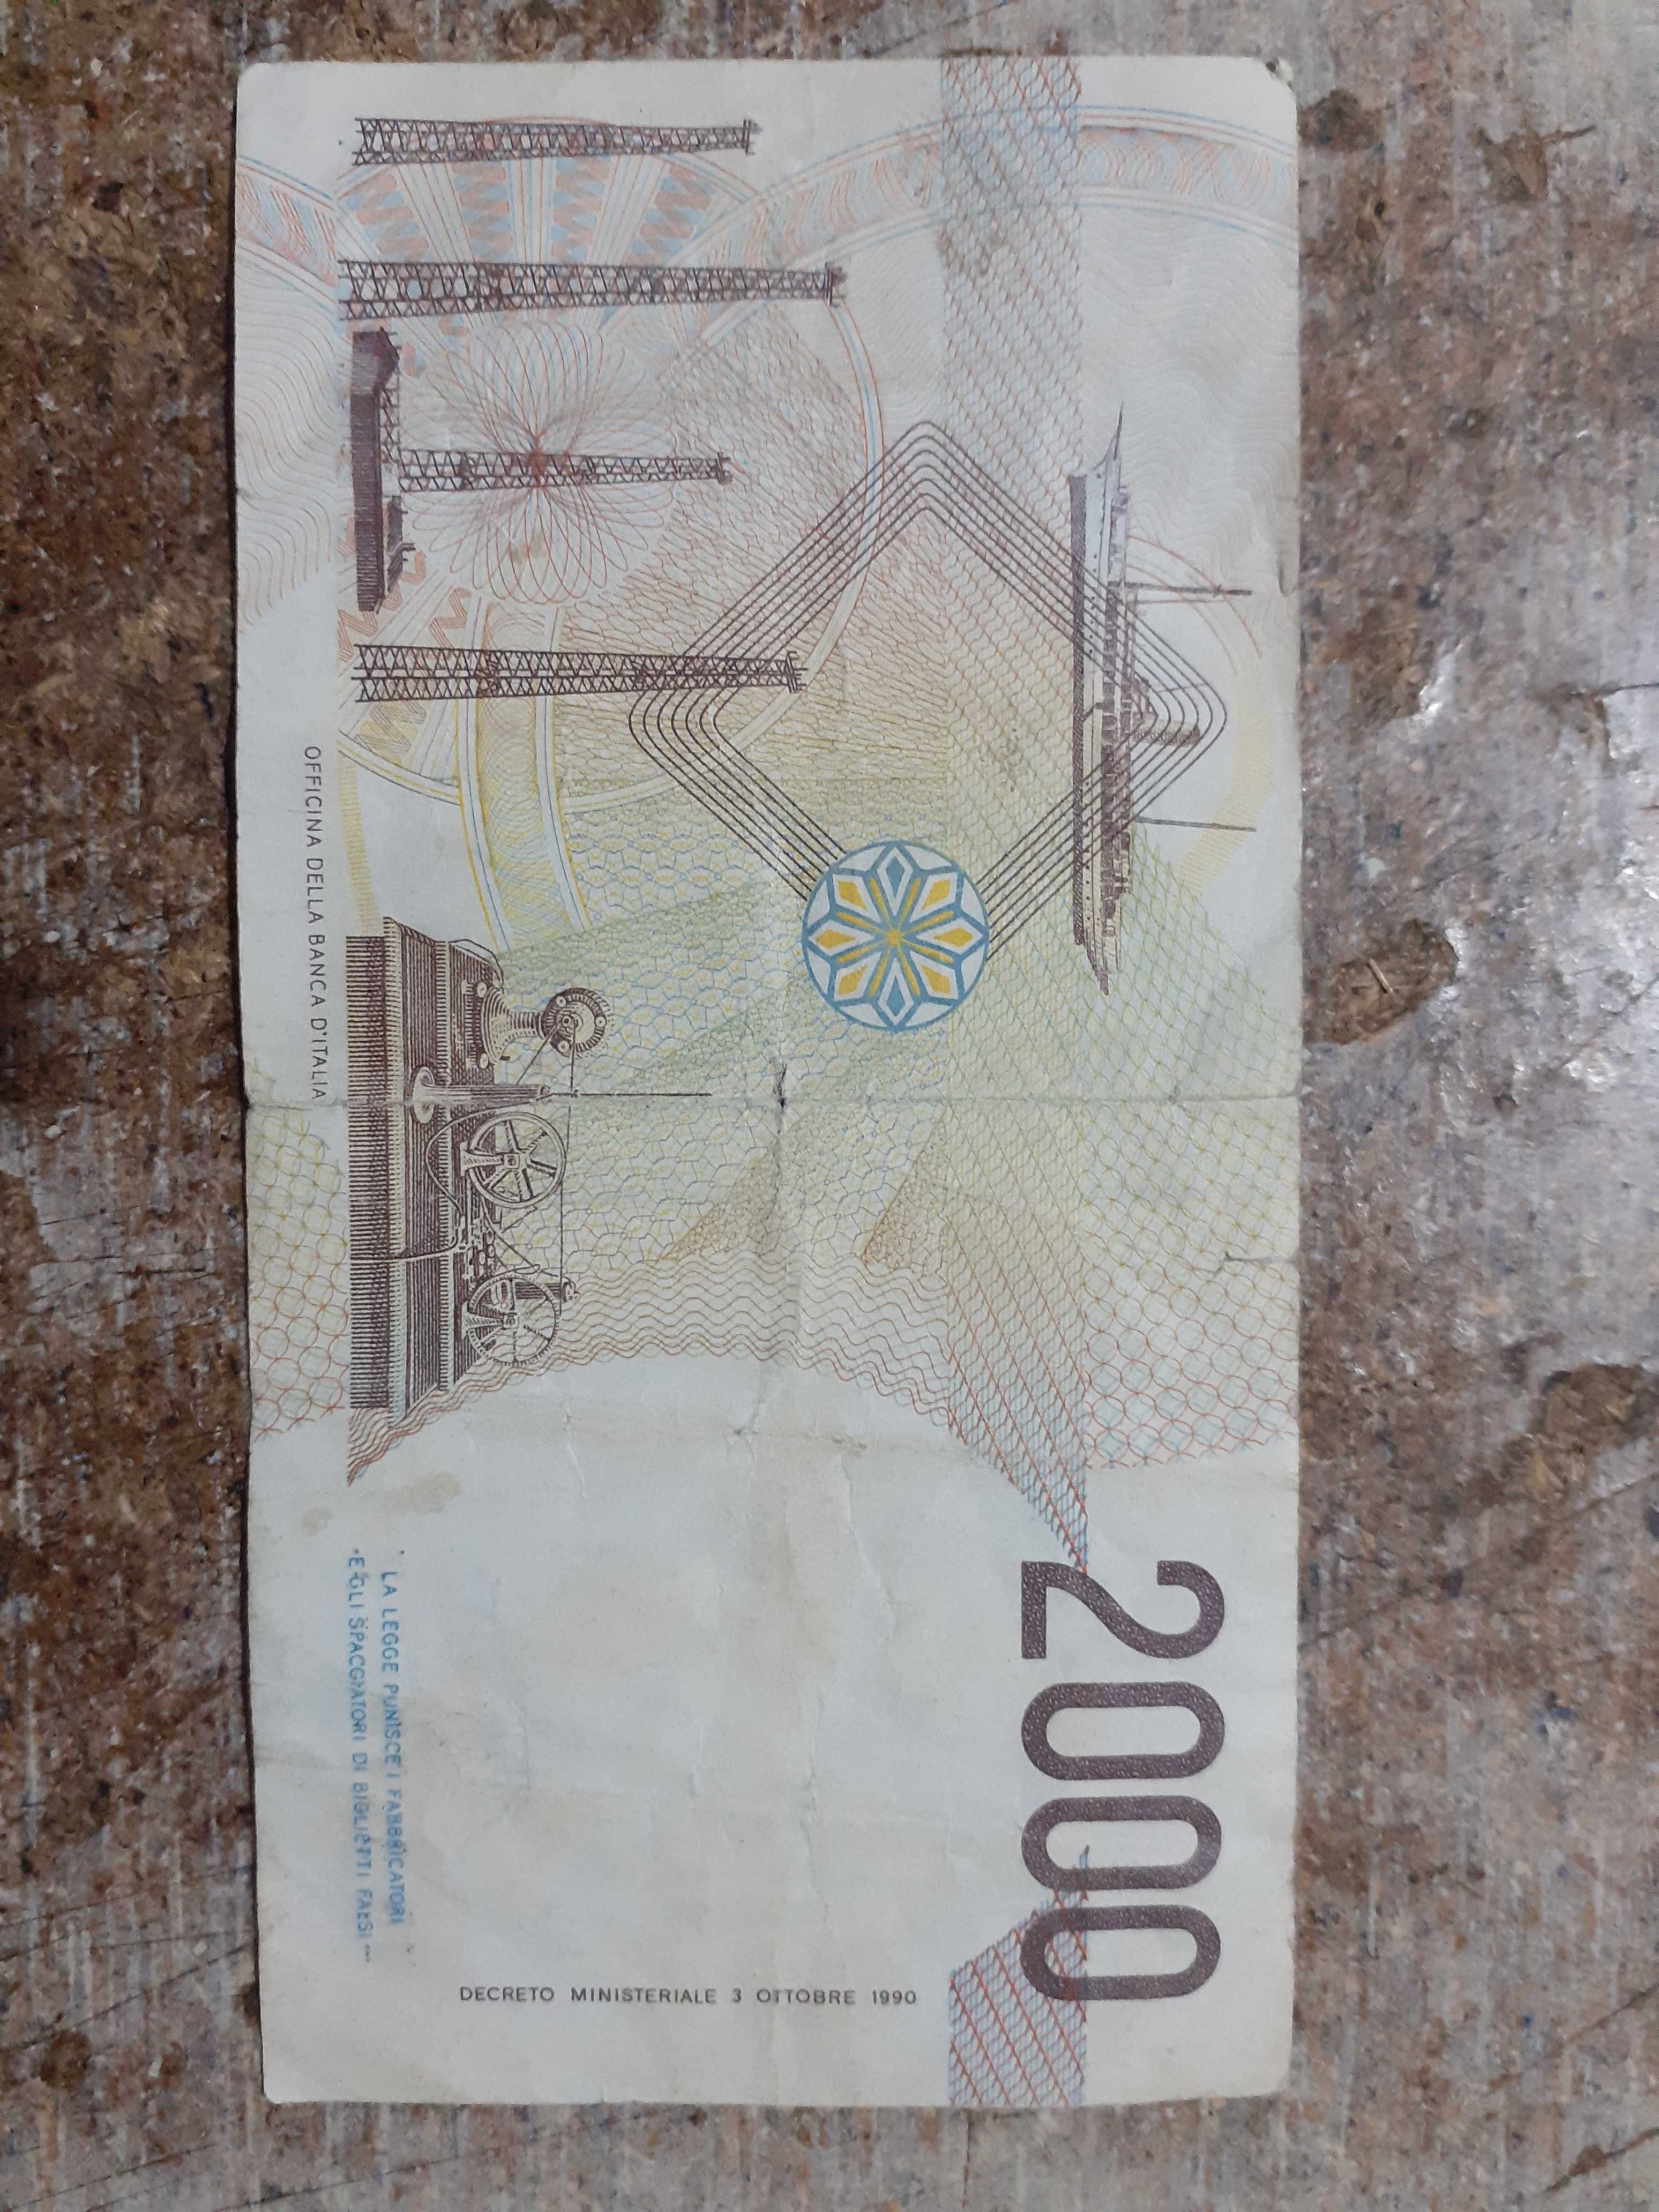 Vand bancnote rusesti si una italiana